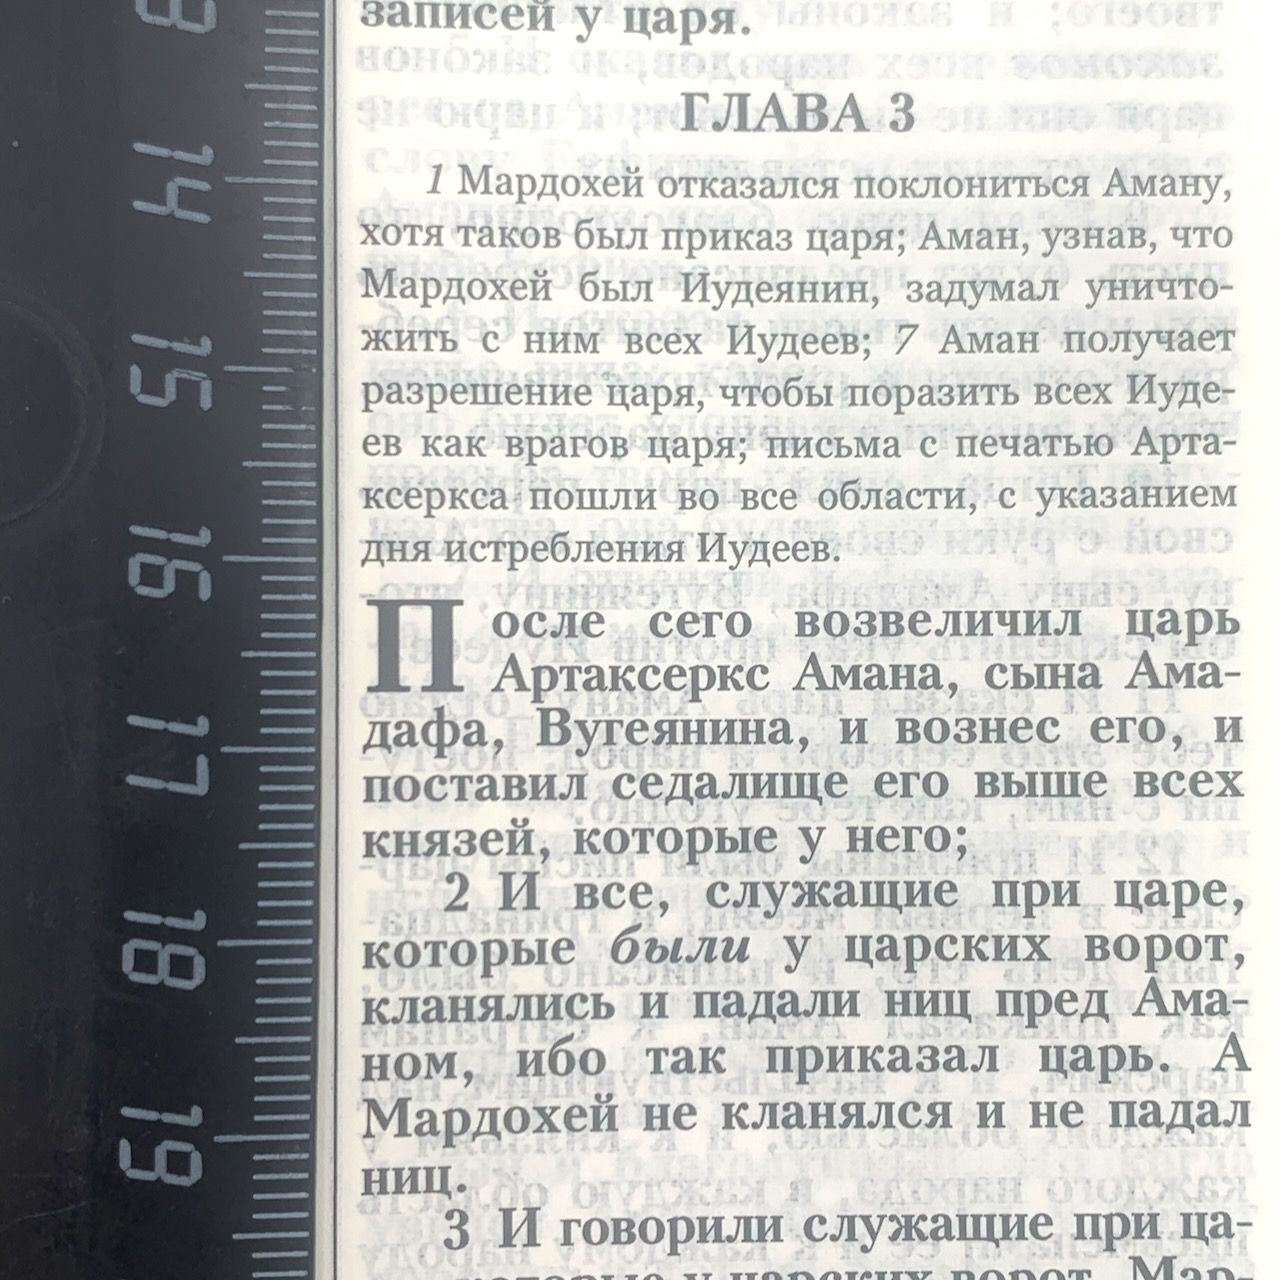 Библия 055 zti код 11549, кожаный переплет на молнии с индексами, цвет черный, золотой обрез, средний формат, 145*205 мм, хороший шрифт